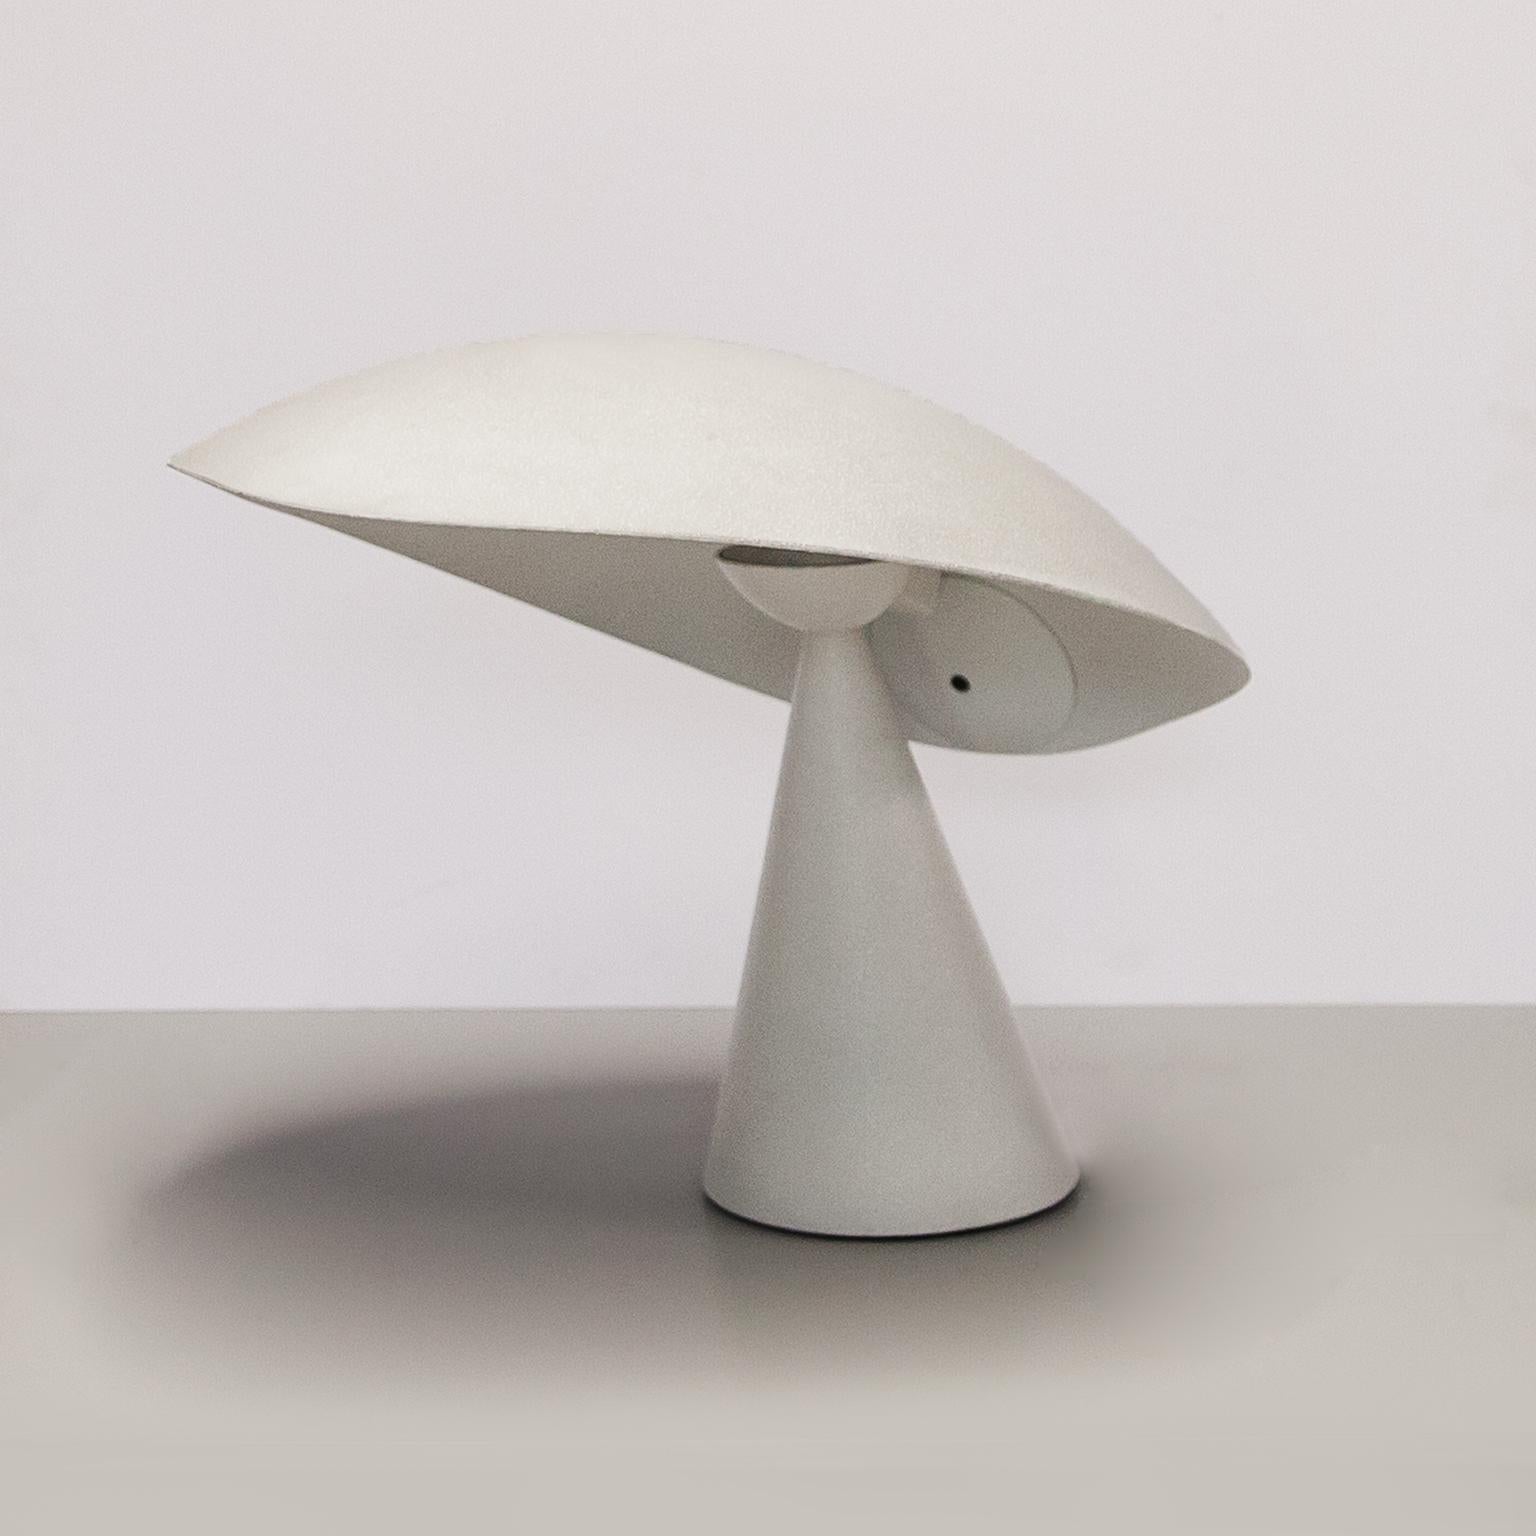 Masayuki Kurokawa entwarf die verstellbare Tischleuchte Lavinia aus weißem, körnigem und emailliertem Aluminiumguss für Artemide, Mailand, 1988. 
Guter originaler Vintage-Zustand.

Die Lavinia Tischleuchte ist eine organische, skulpturale Leuchte,